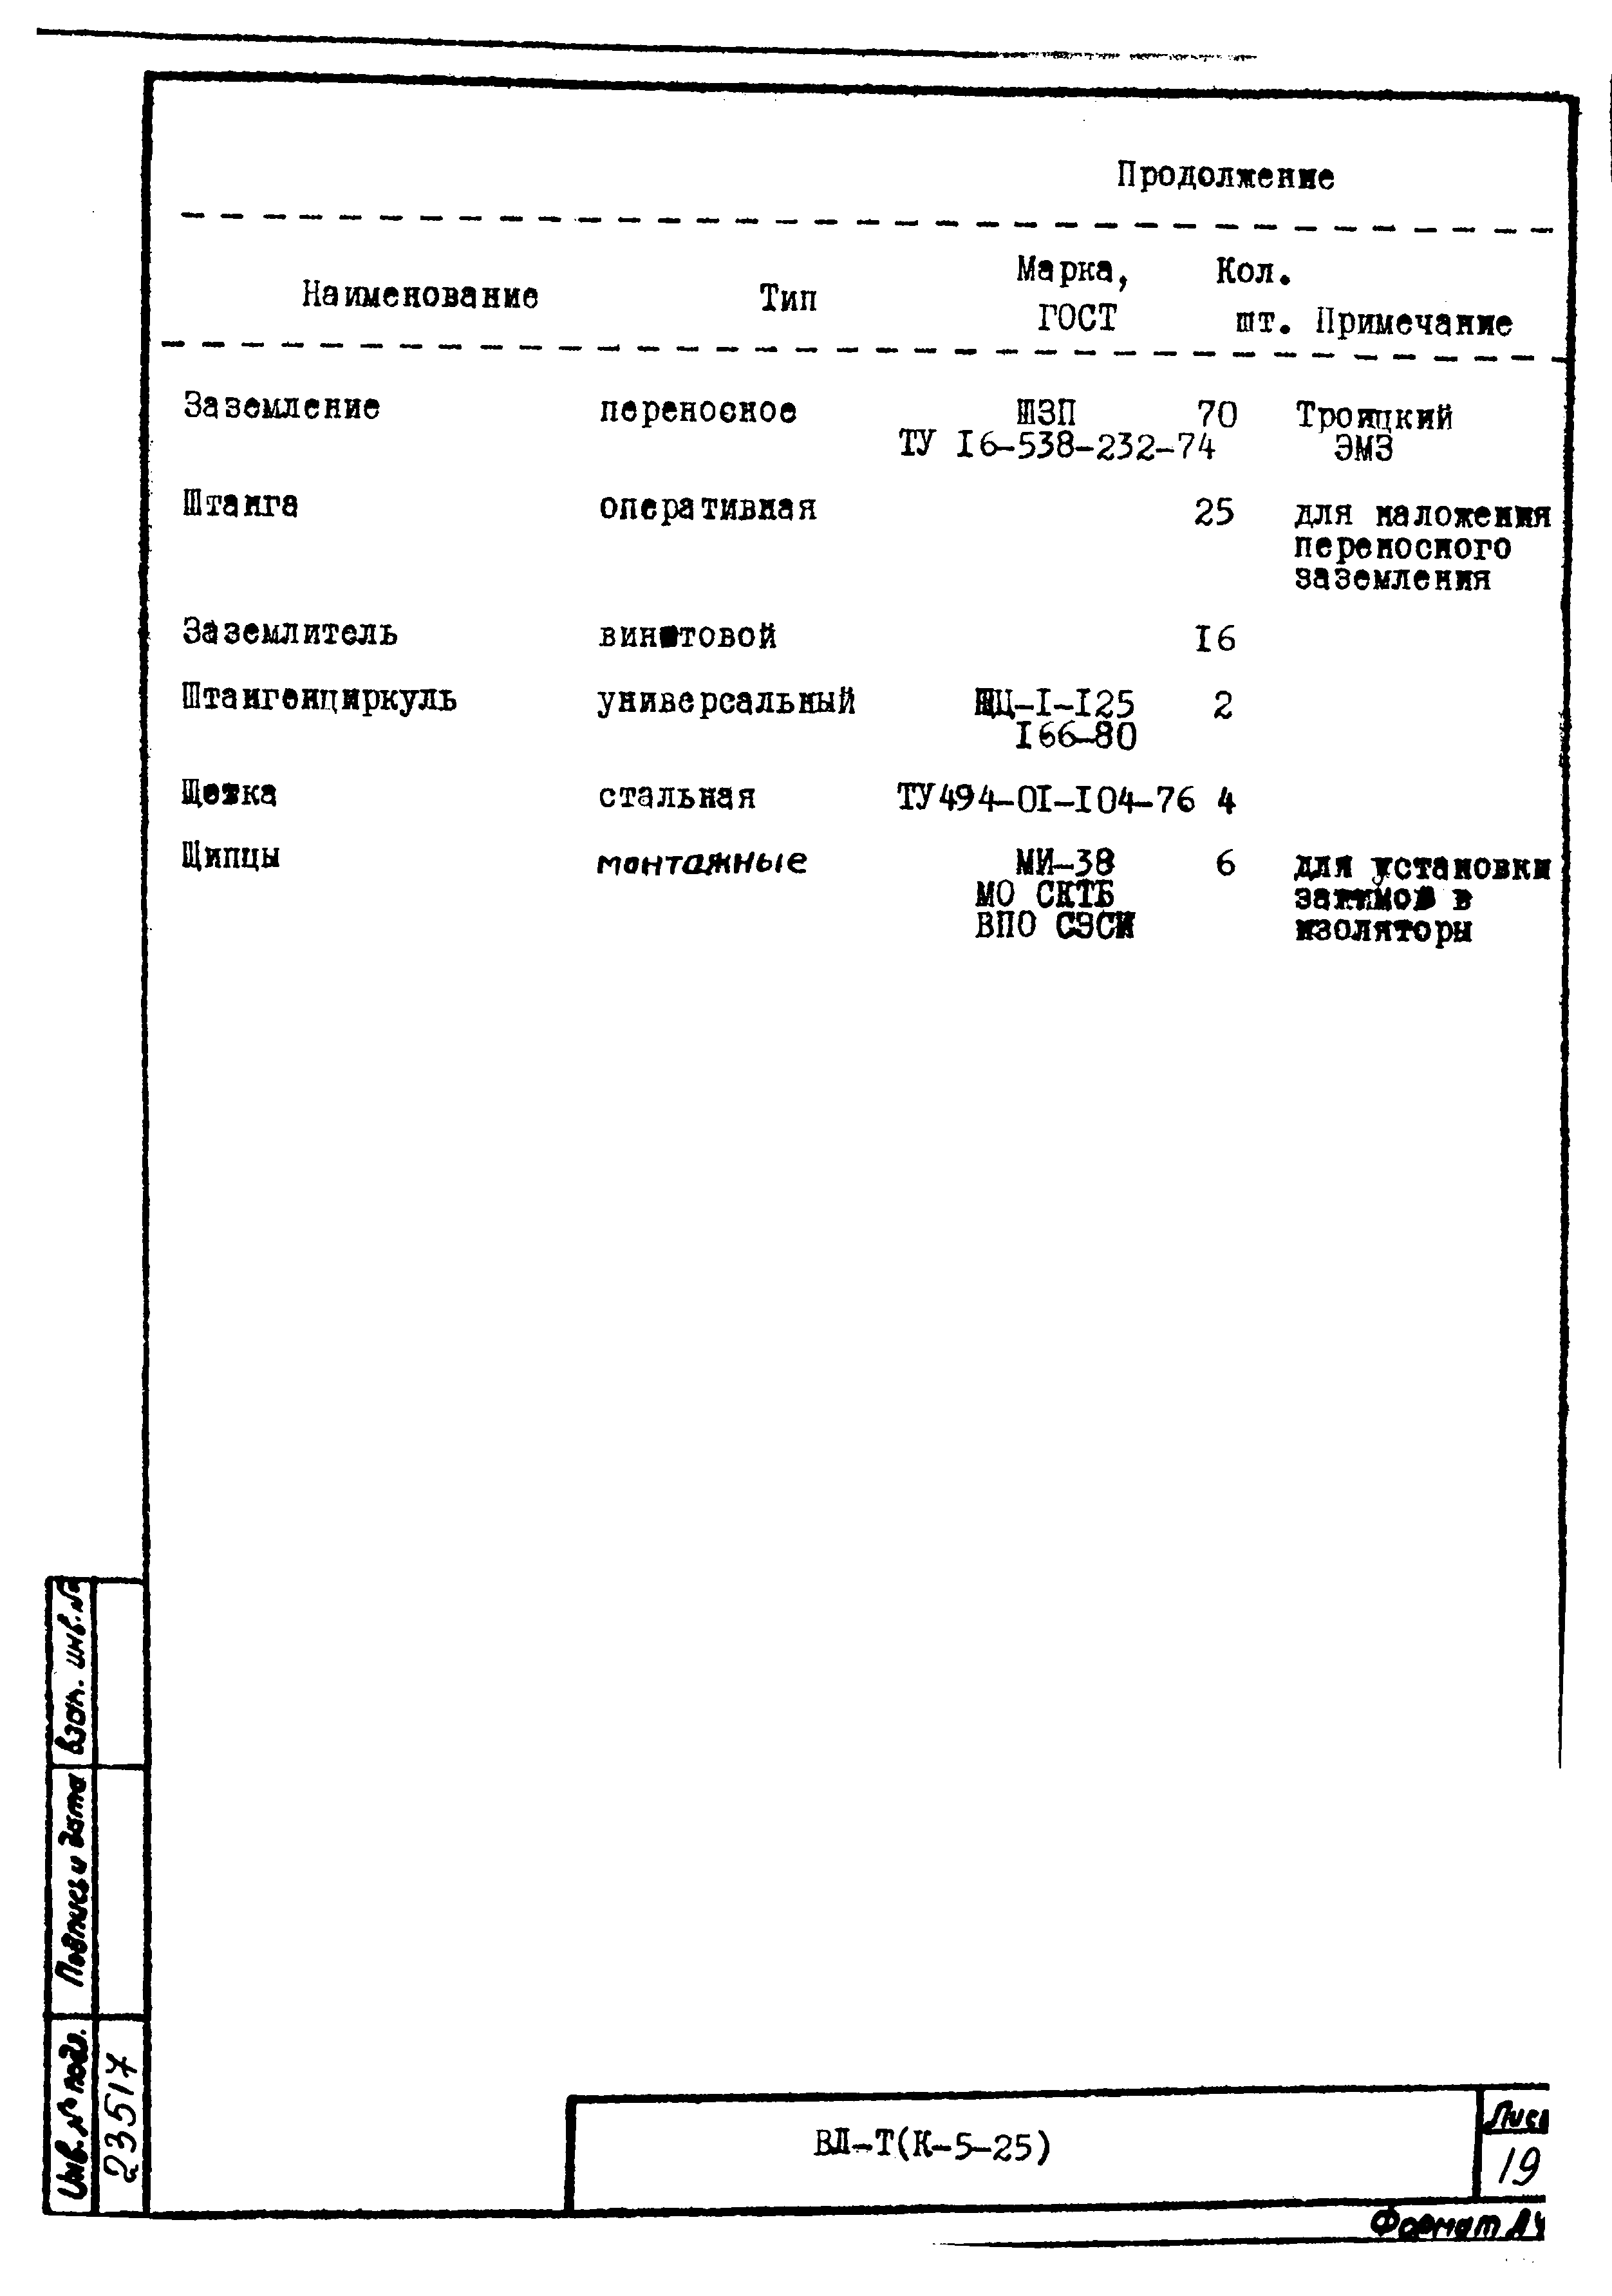 Технологическая карта К-5-25-24